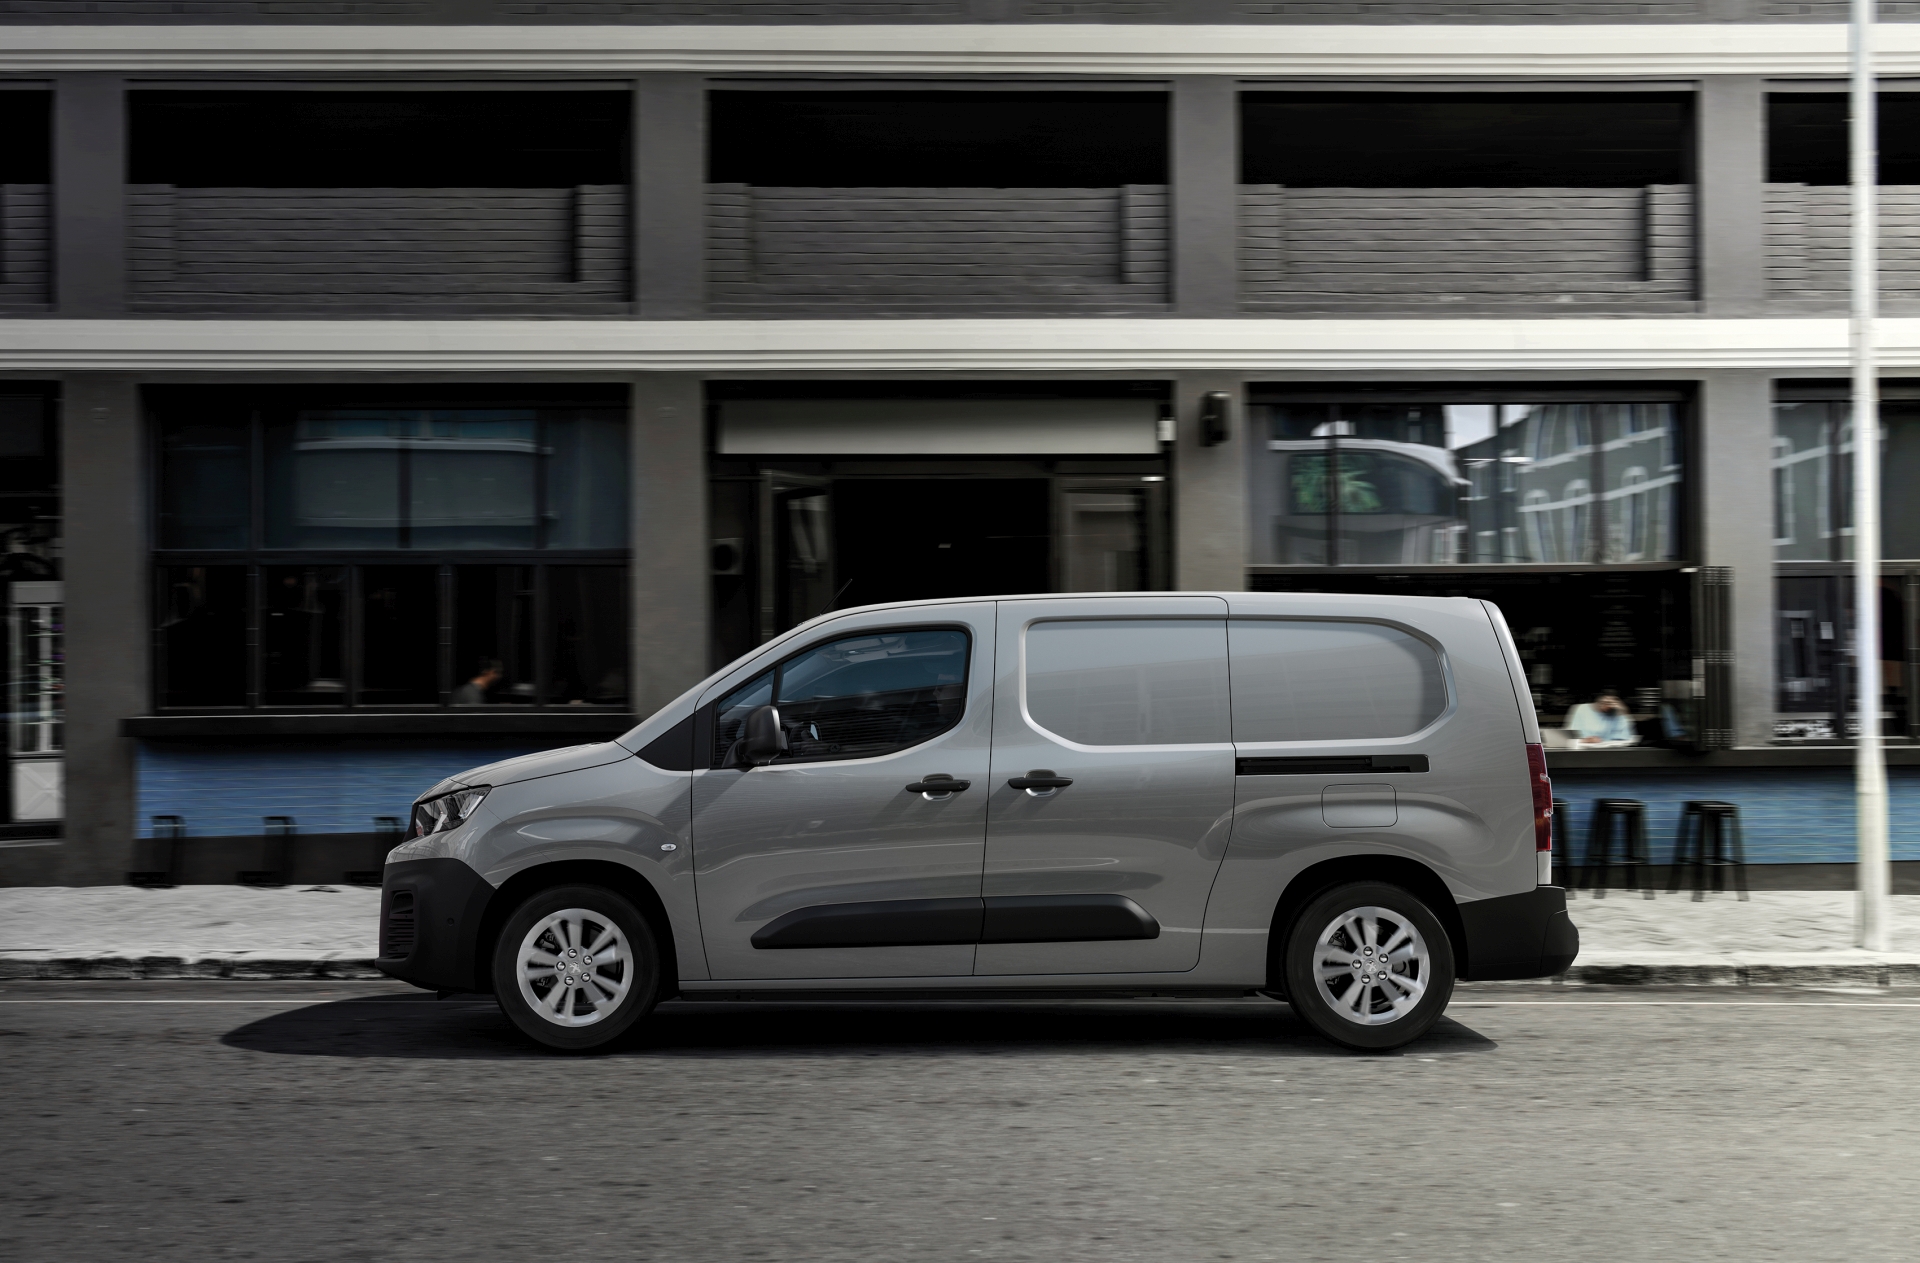 Nowy Peugeot ePartner elektryczny dostawczak o zasięgu